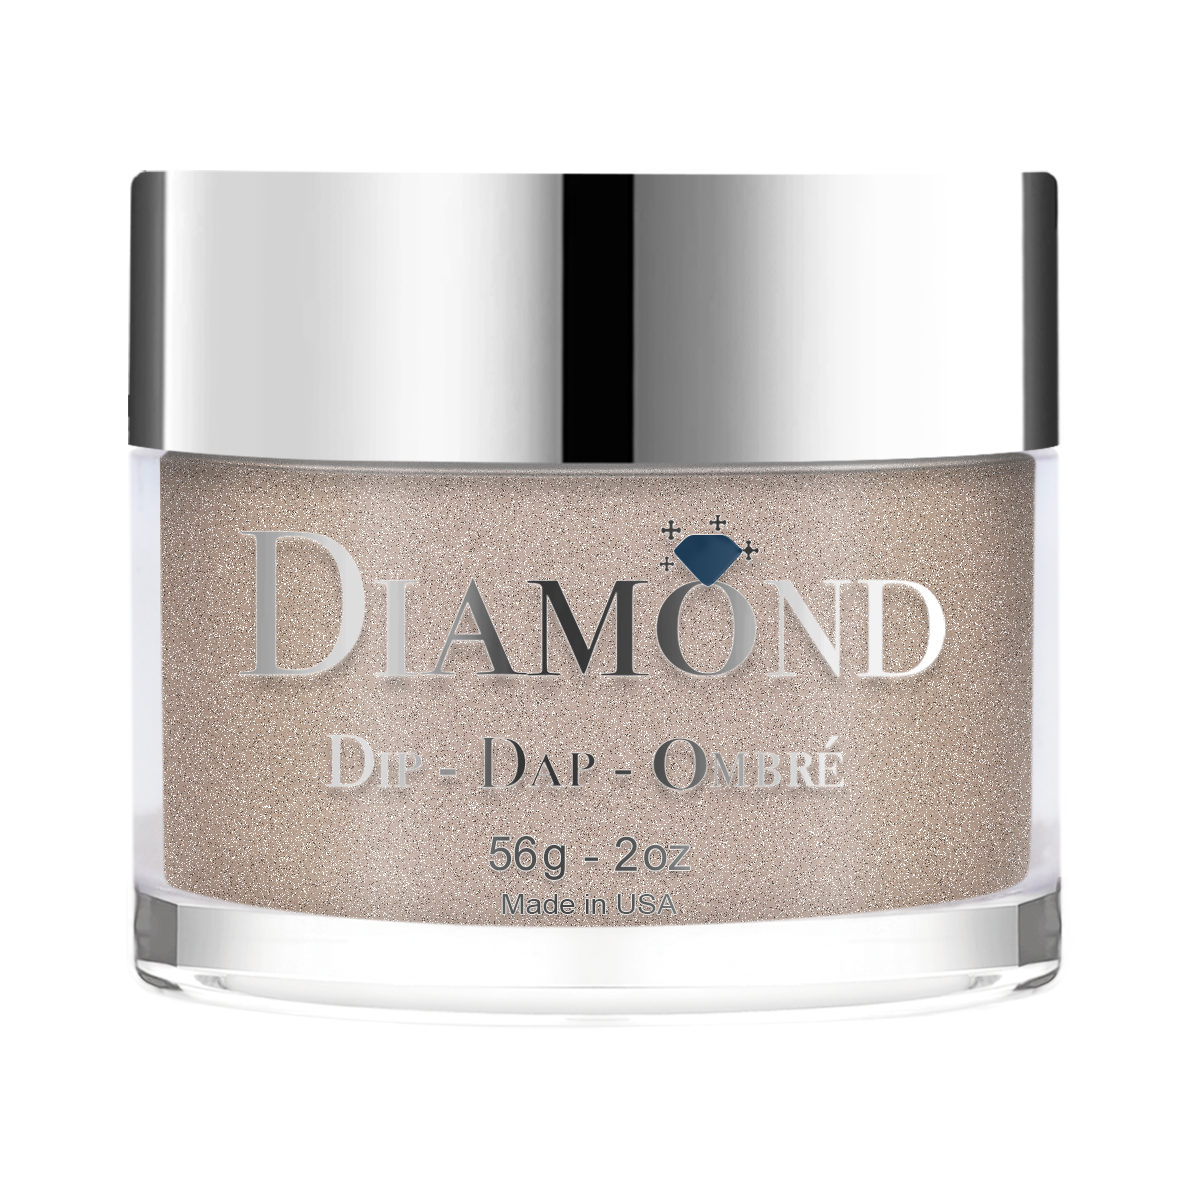 Diamond Dip & Dap Ombre Powder - 133